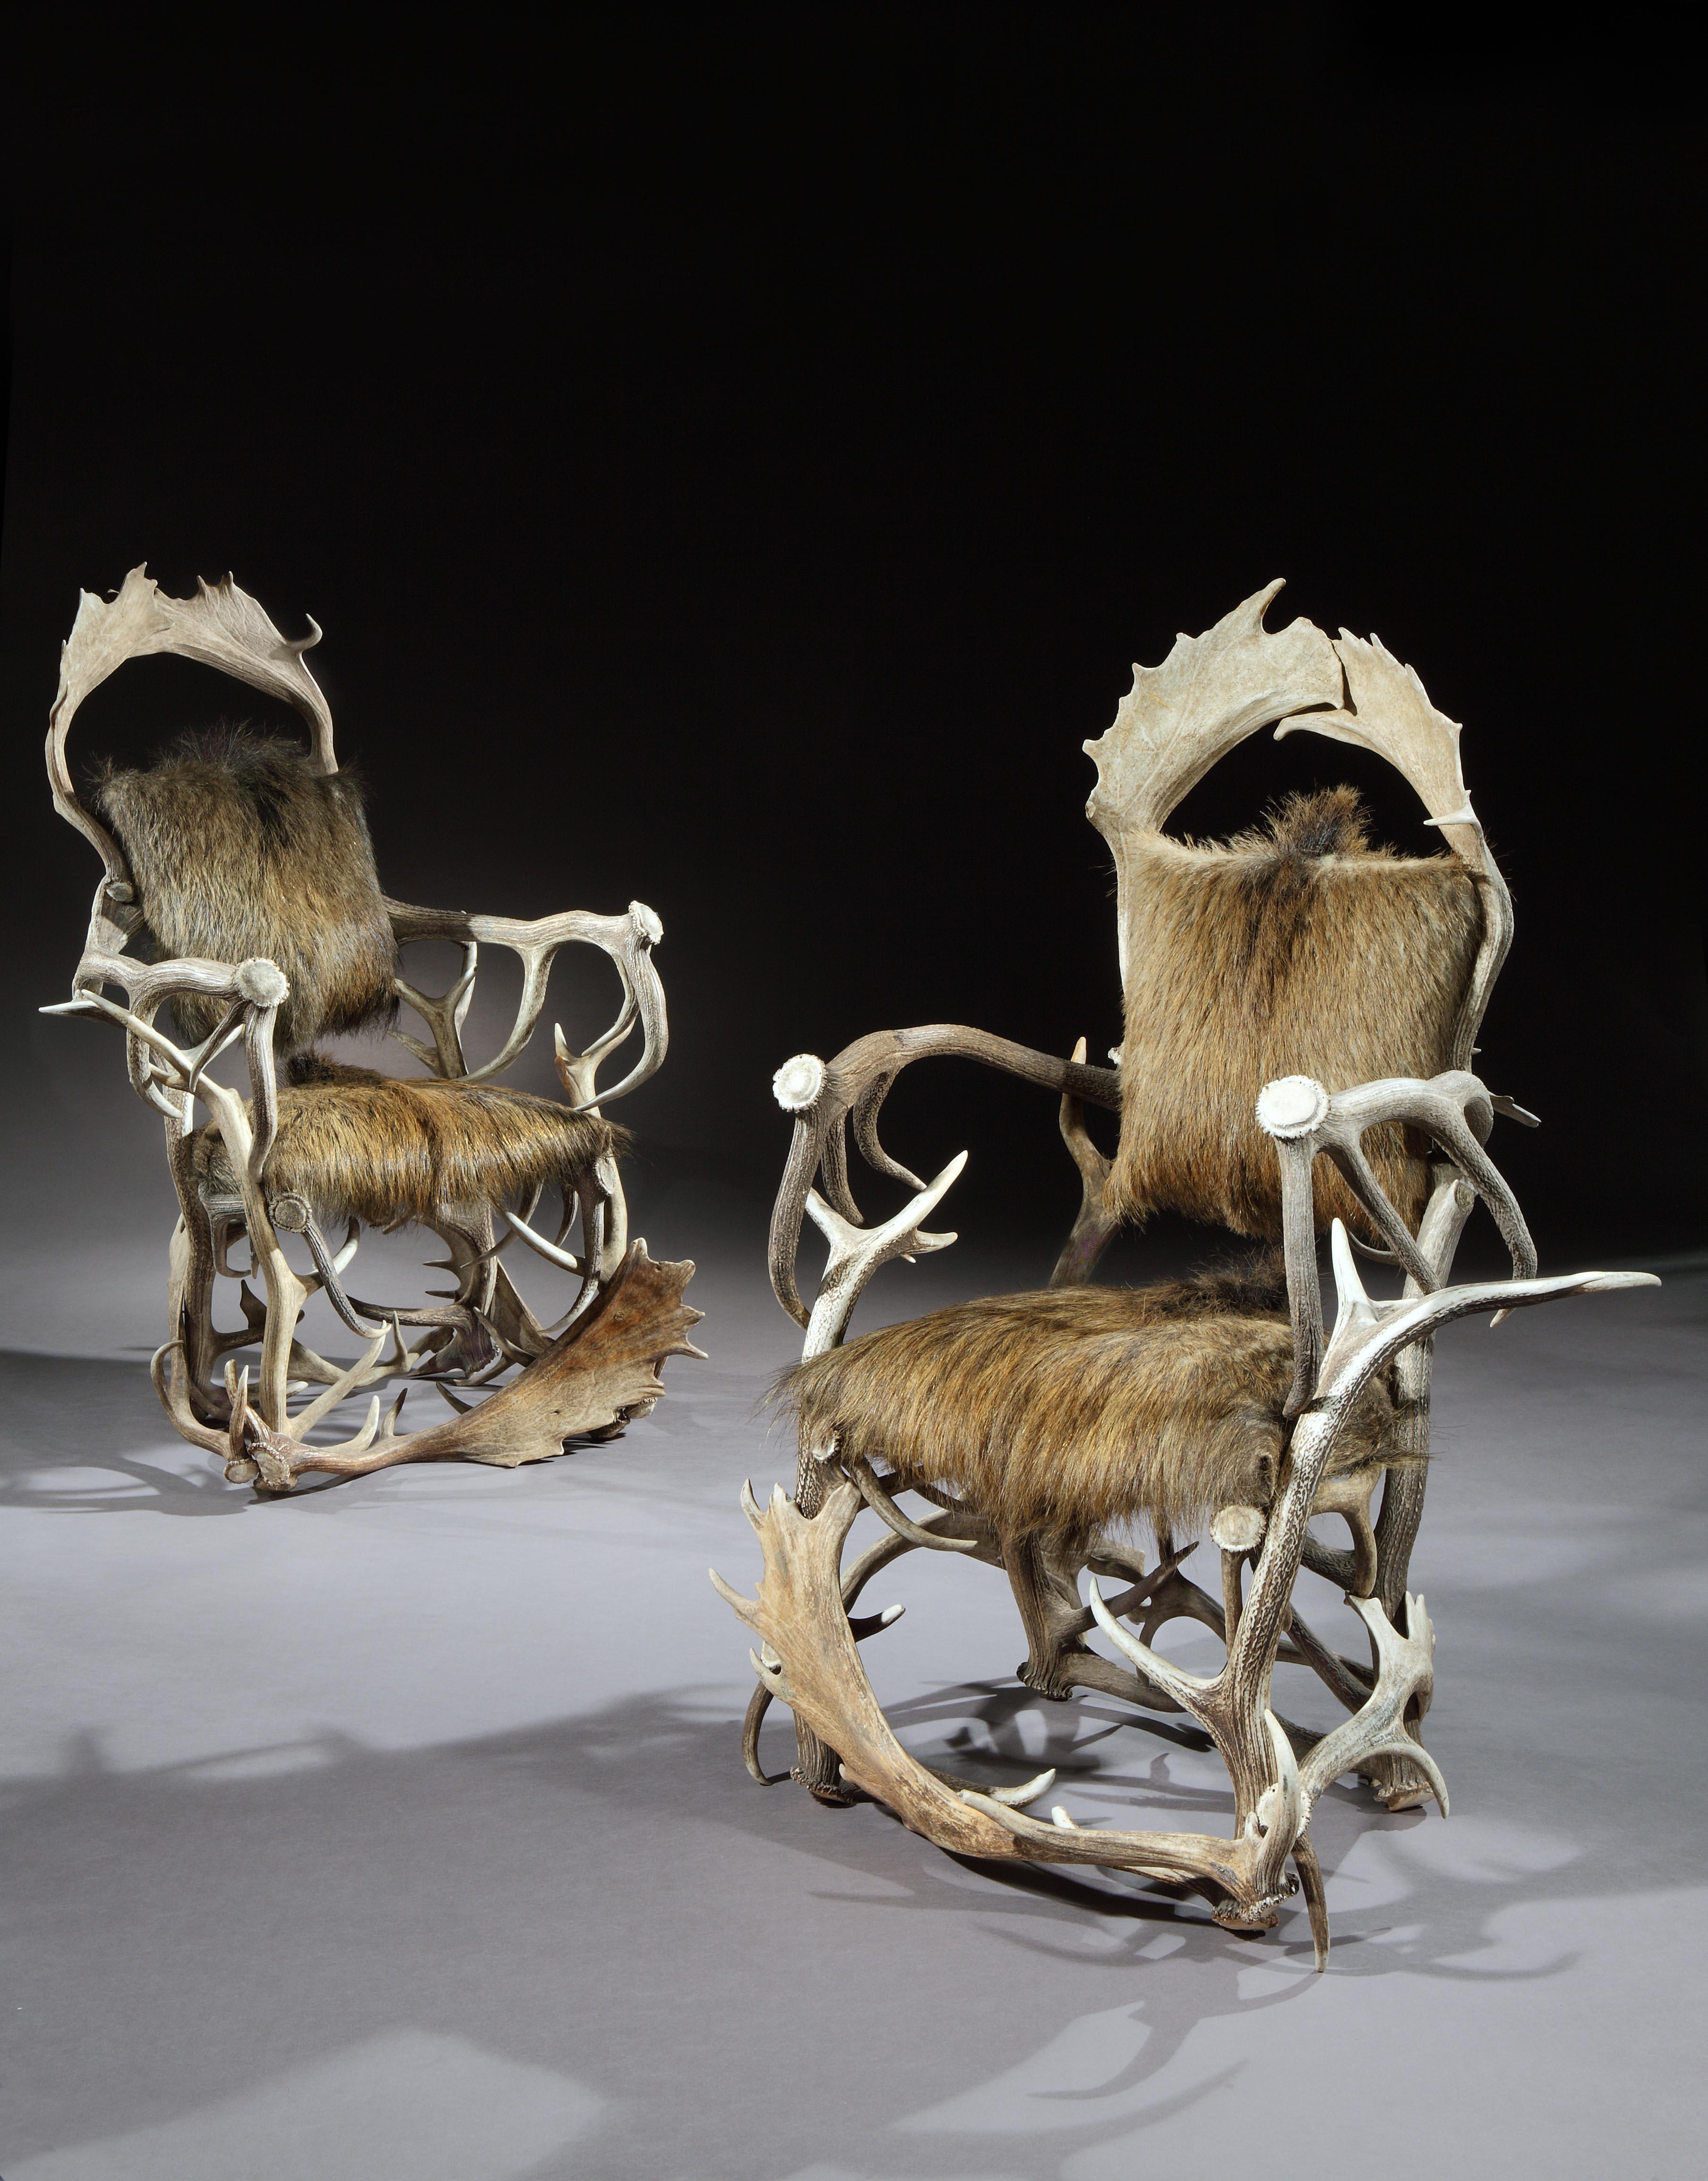 Les paires de fauteuils trophées de chasse sont exceptionnellement rares. Cette paire est également inhabituelle car elle est fabriquée à partir de quelques grands bois, ce qui lui confère une qualité minimaliste. La forme fluide des bois crée une